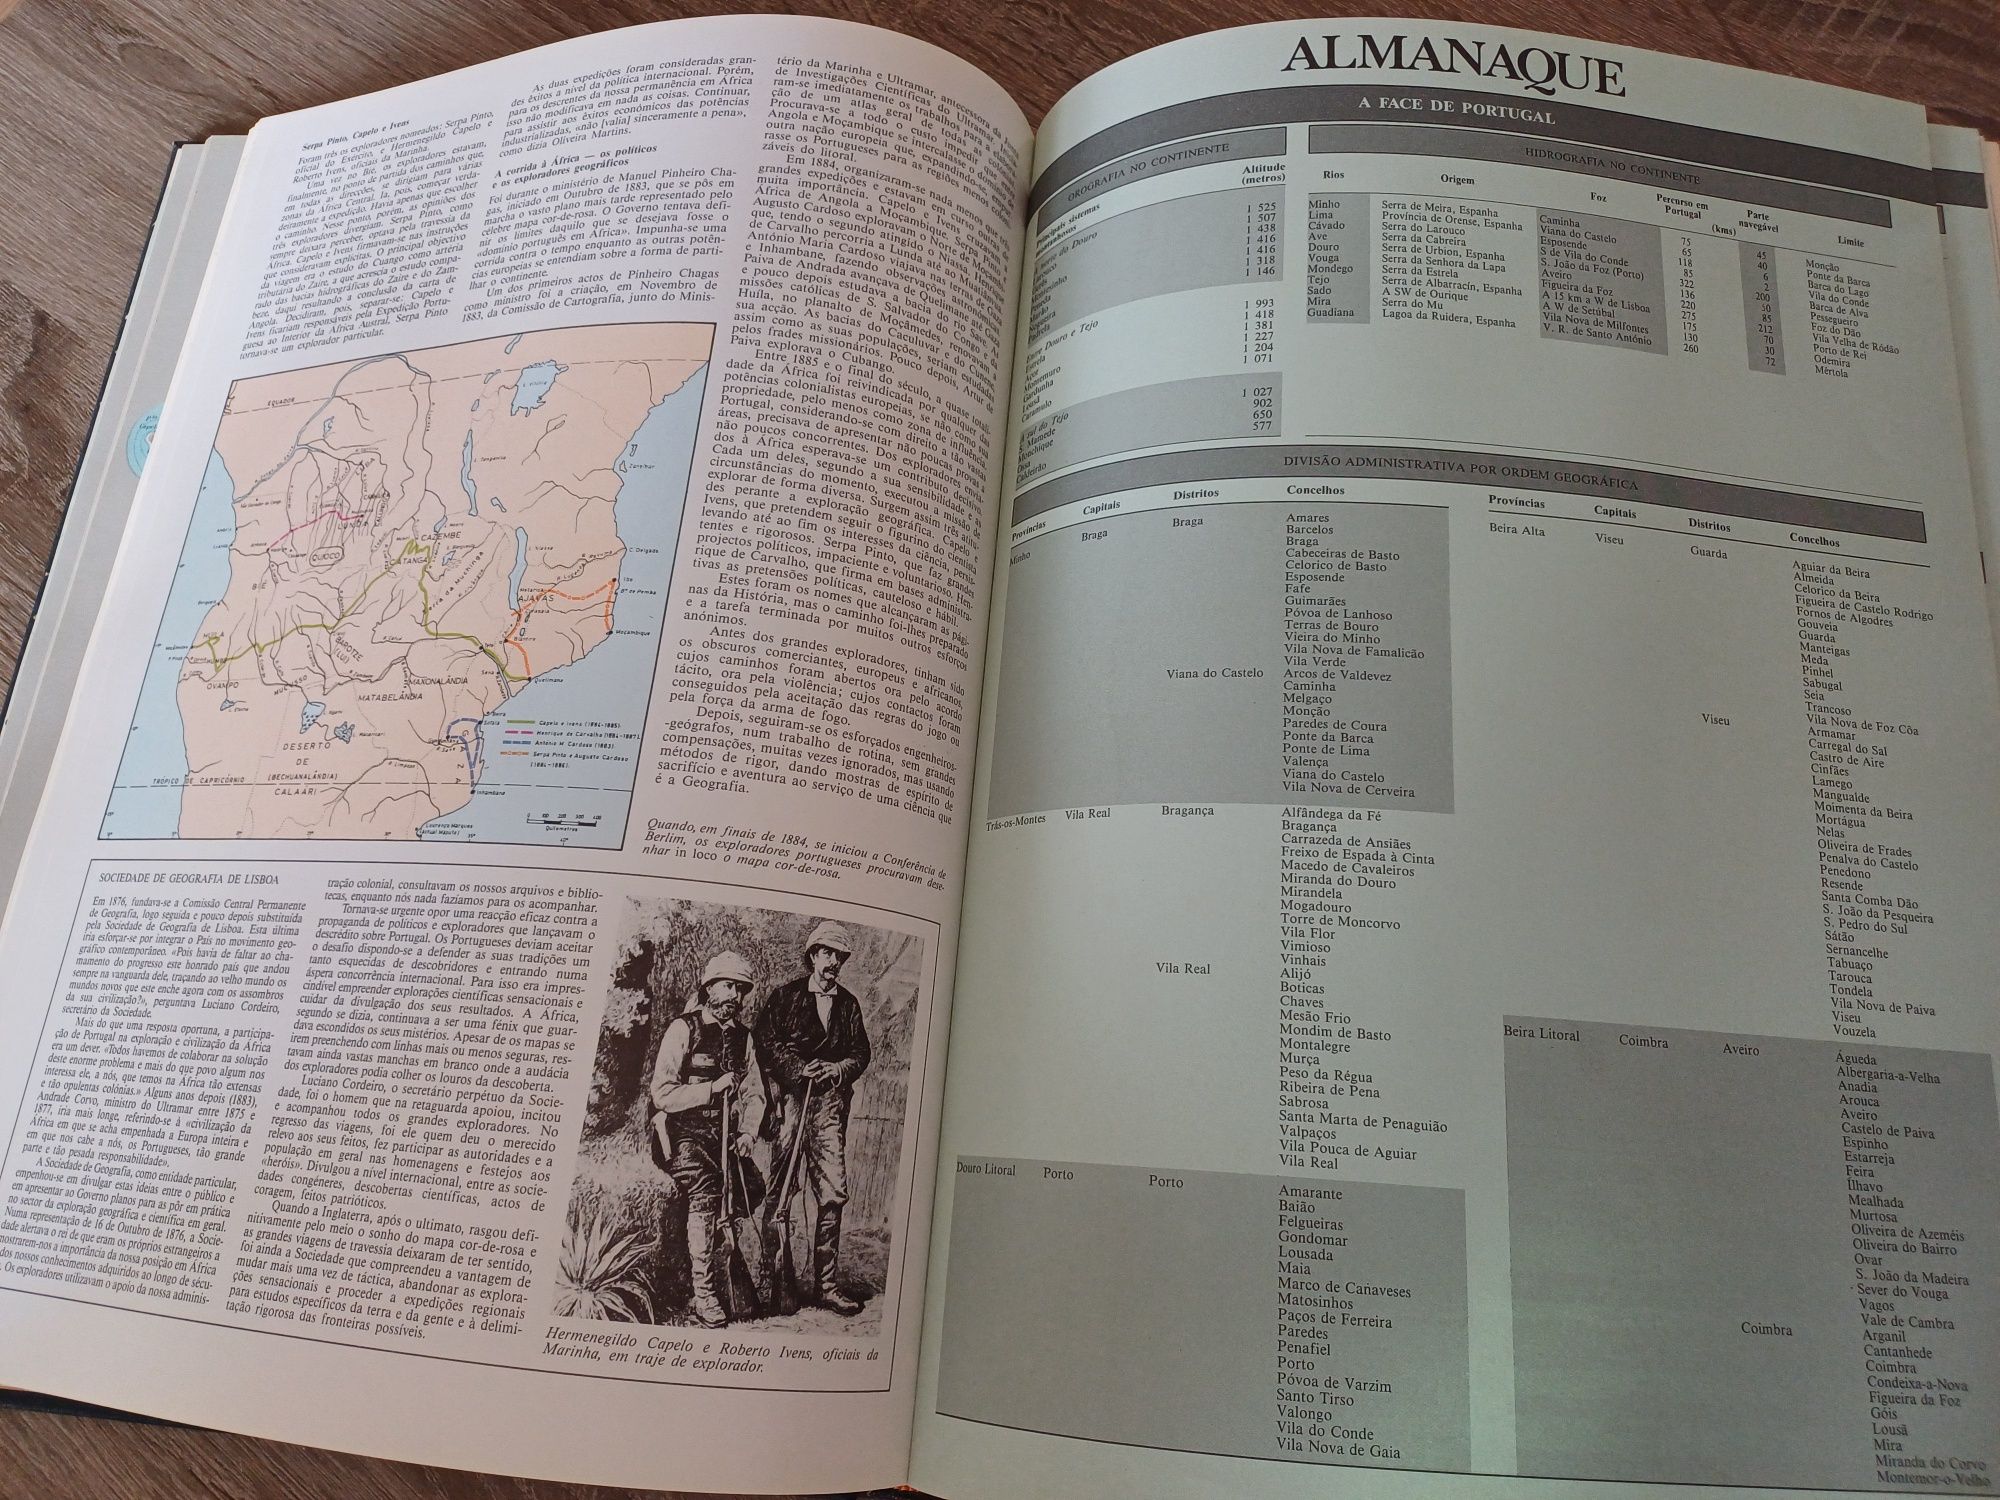 Atlas de Portugal (1a edição 1988)